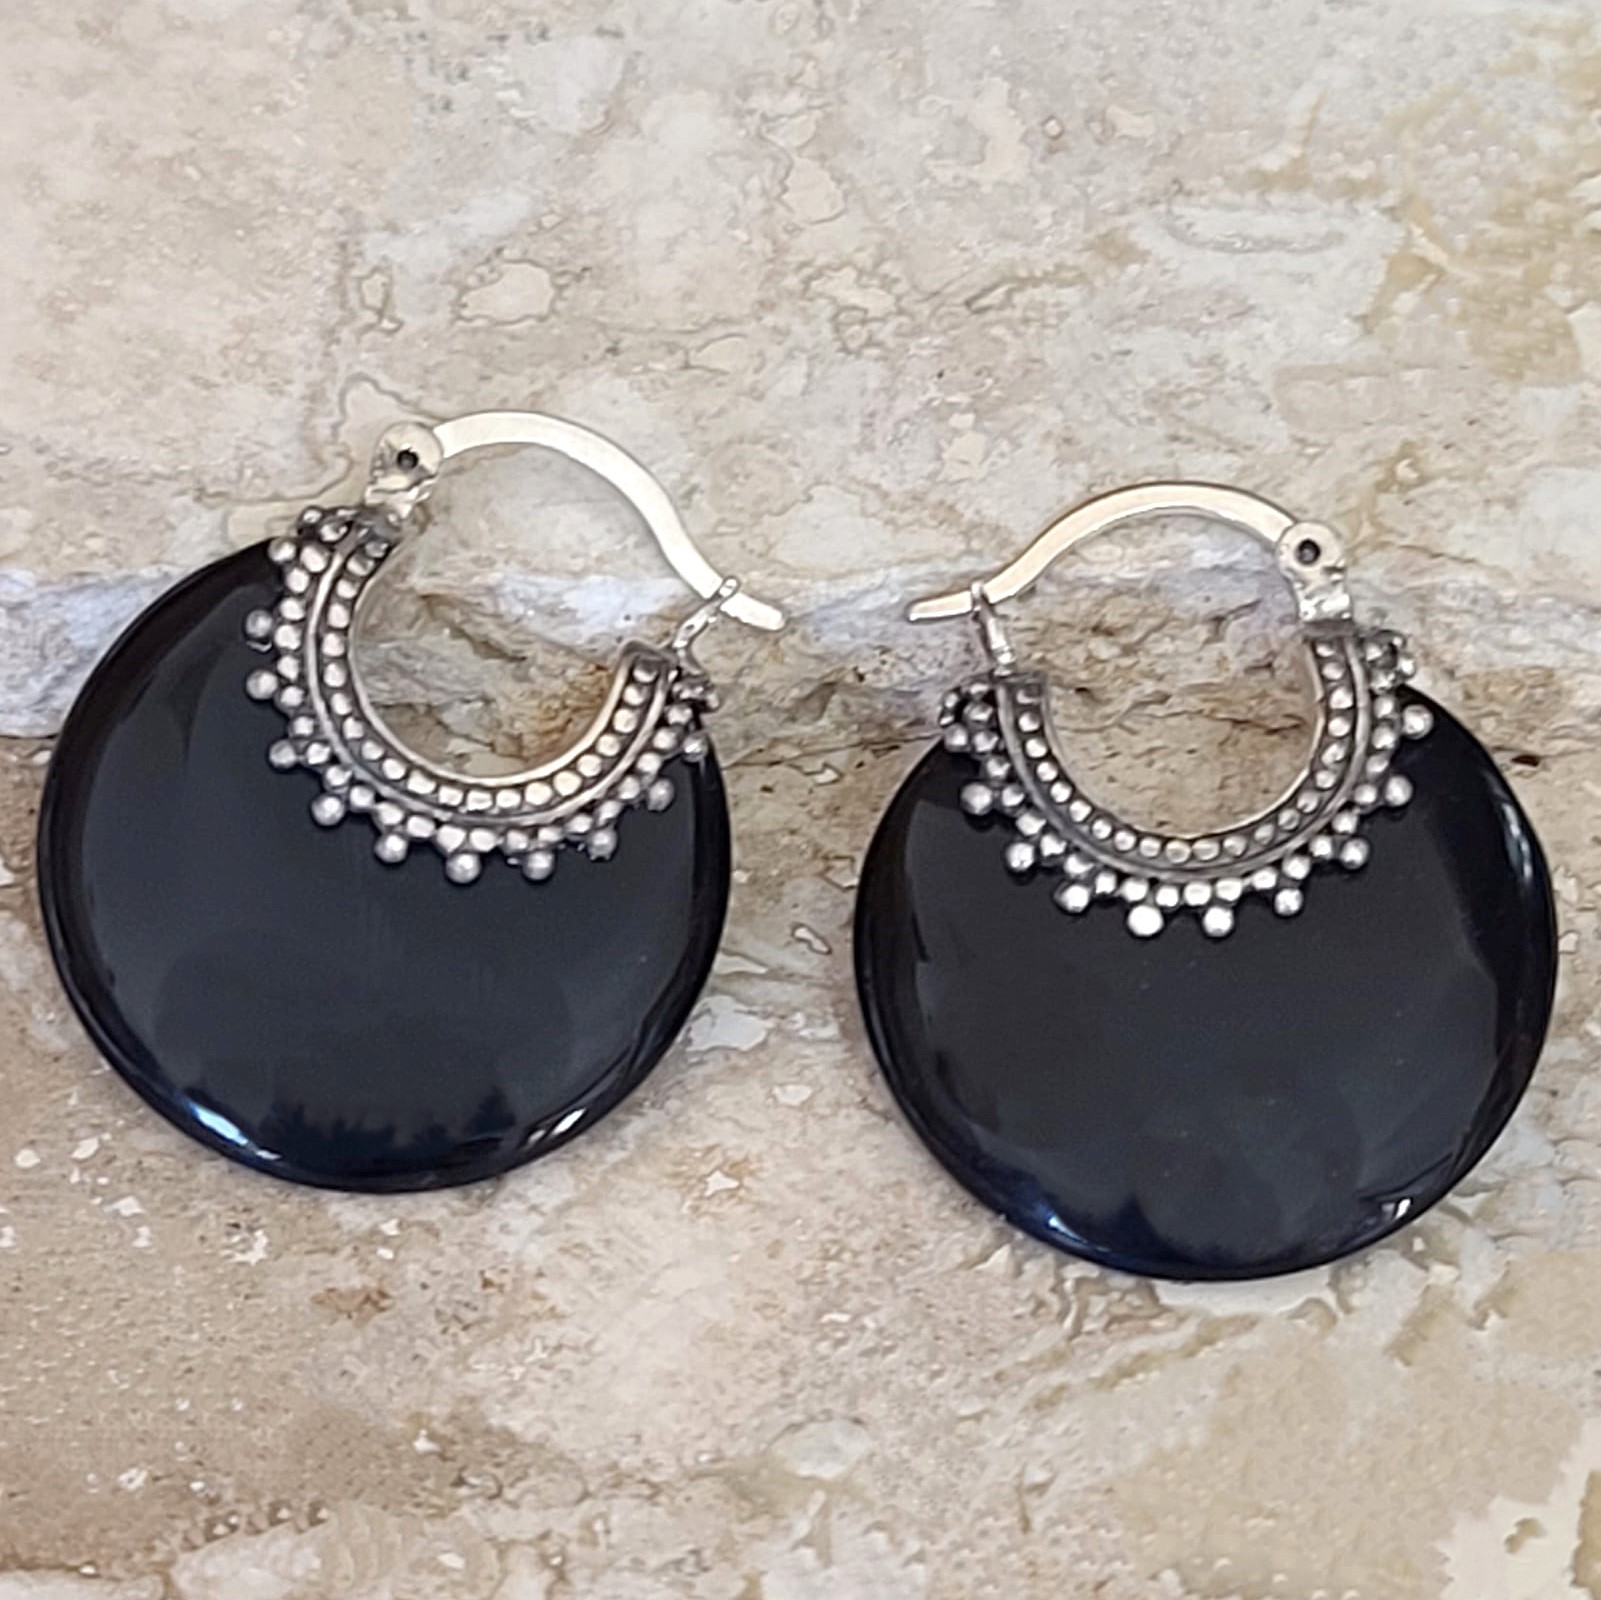 Onyx gemstone earrings, hoop style, 925 sterling silver